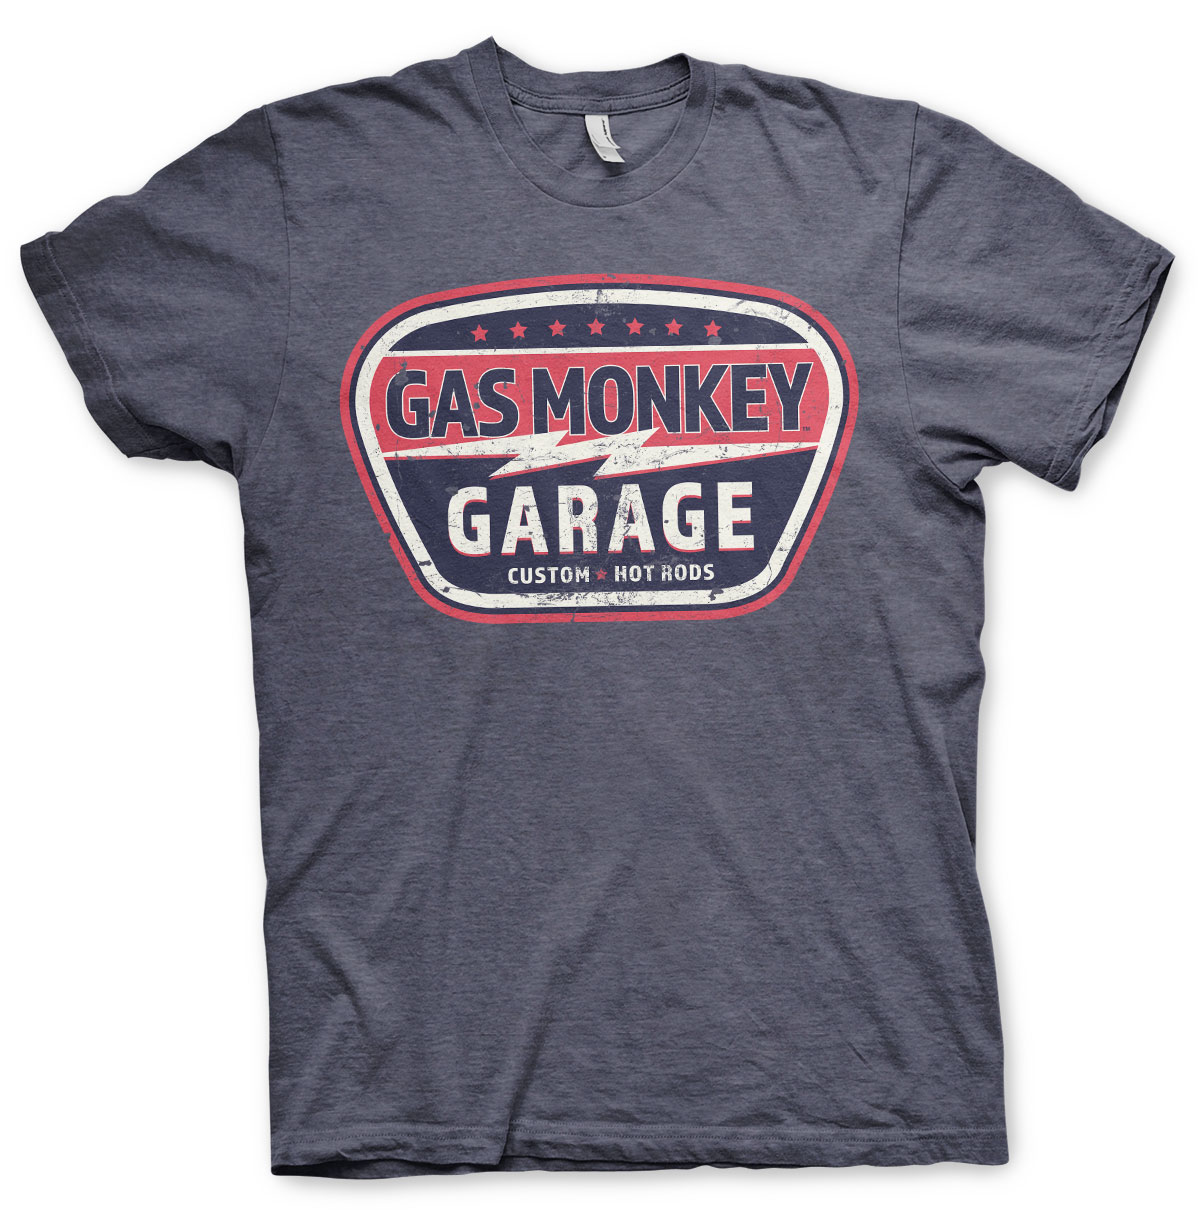 GAS MONKEY GARAGE VINTAGE